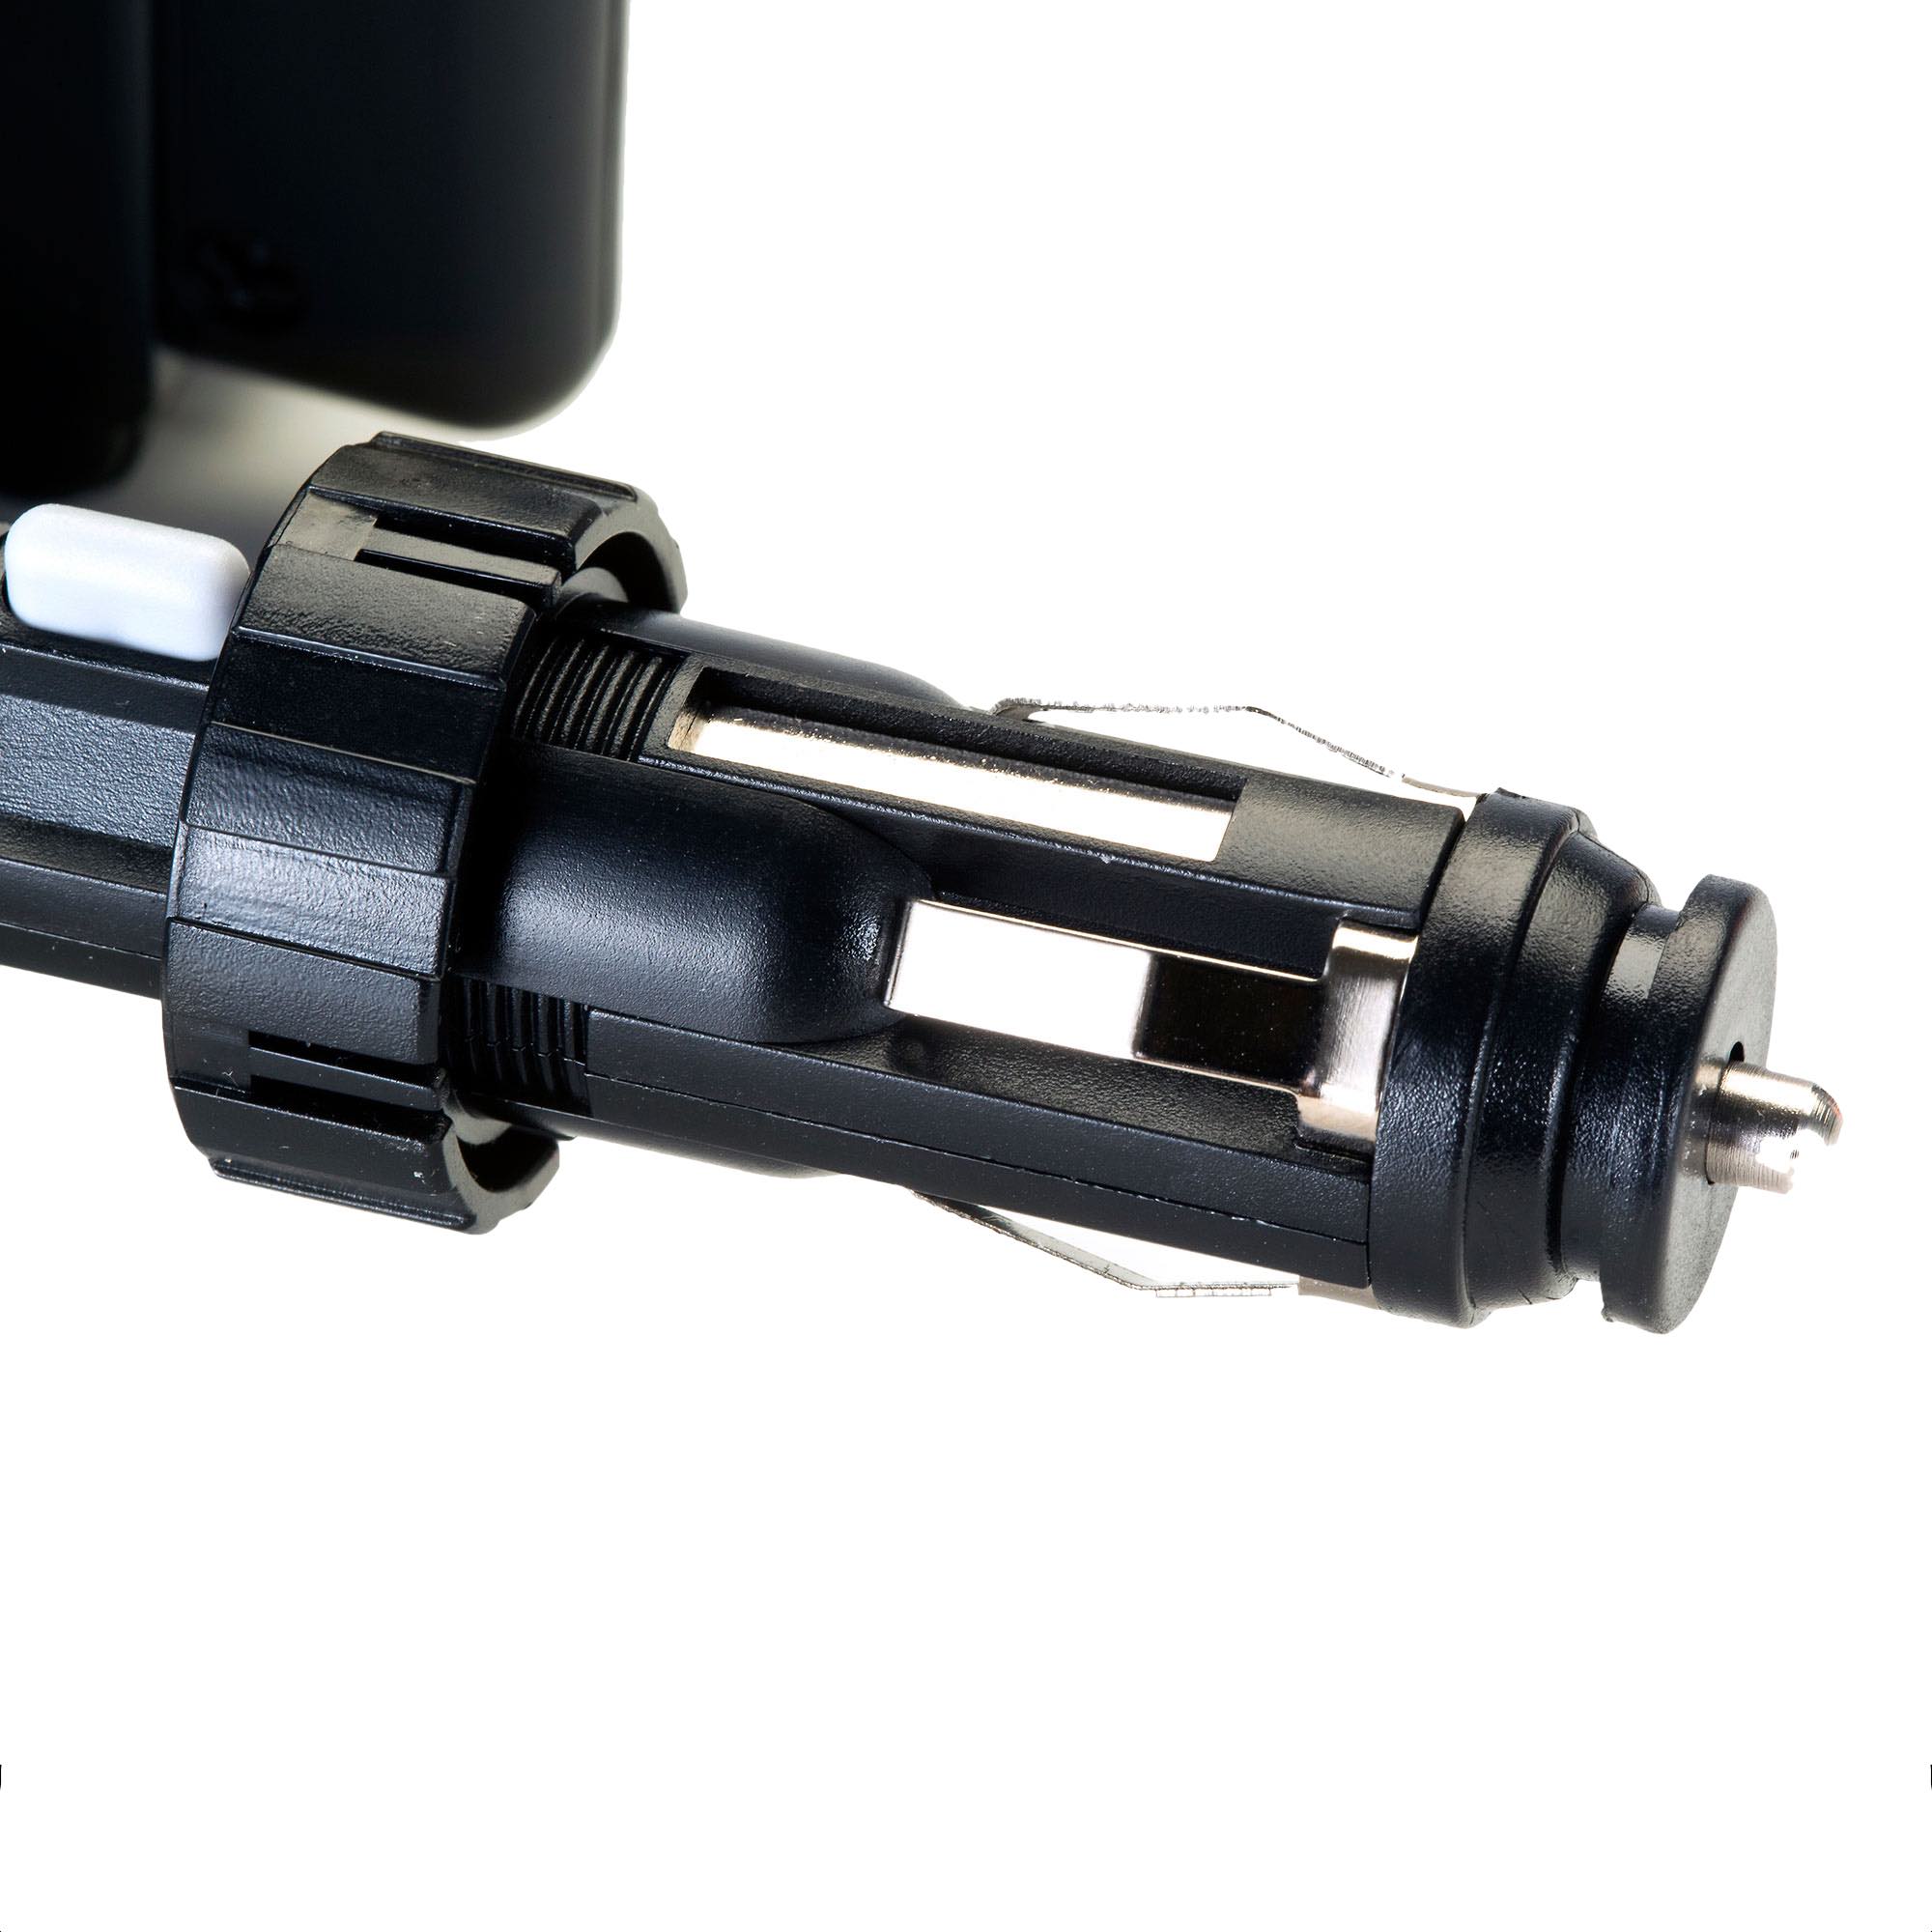 Dual USB / 12V Charger Car Cigarette Lighter Mount and Holder for the Garmin Oregon 600 / 650 / 650t